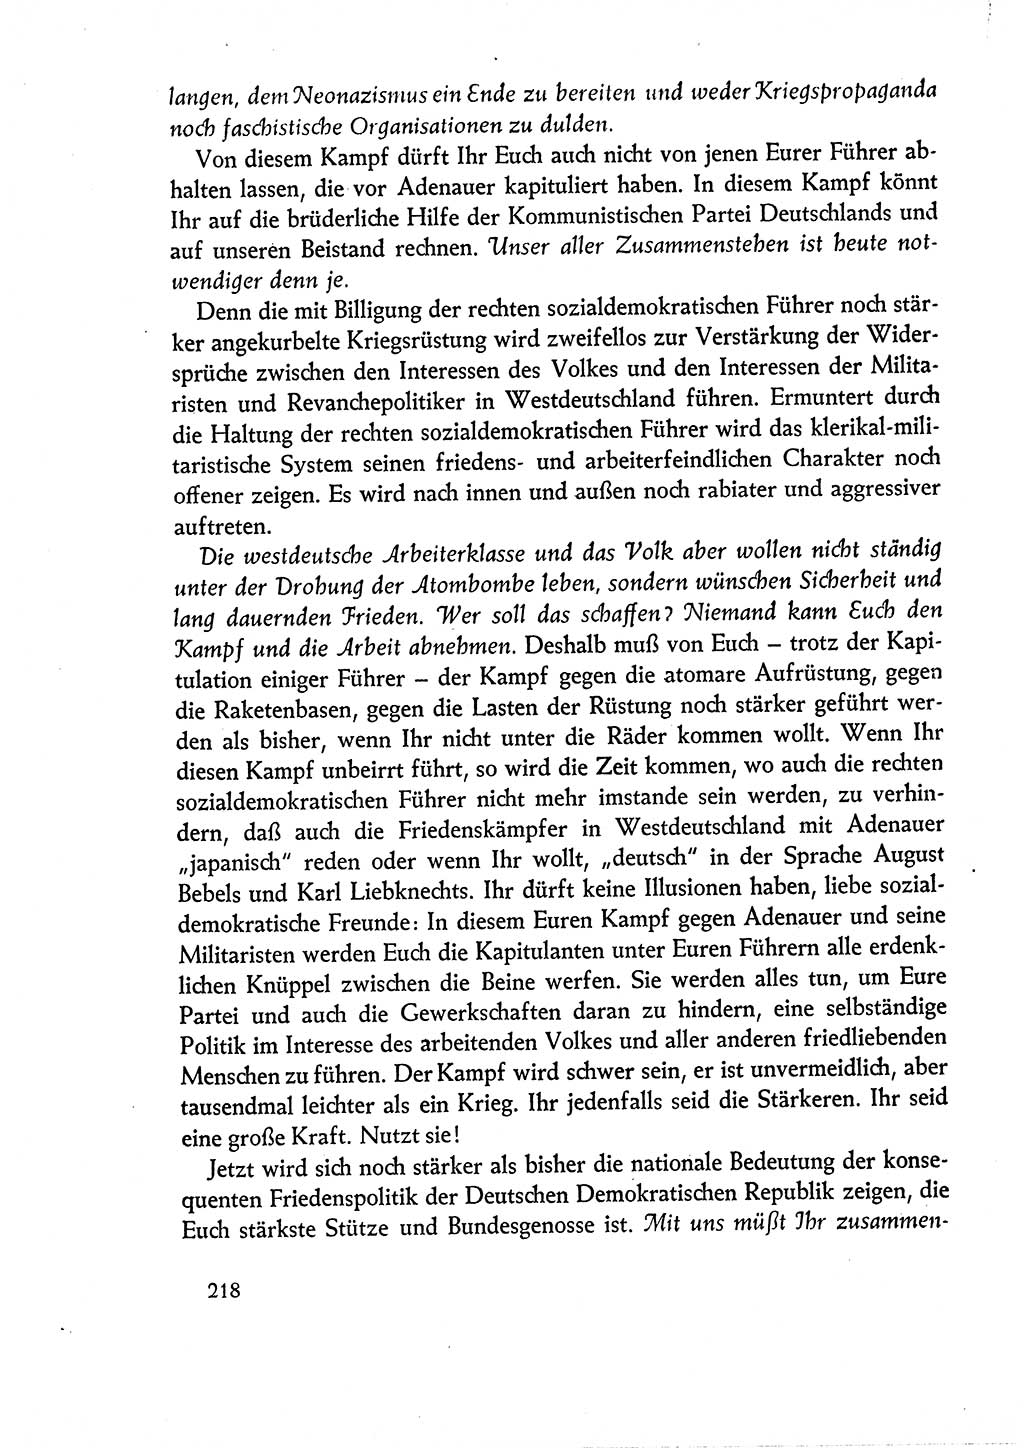 Dokumente der Sozialistischen Einheitspartei Deutschlands (SED) [Deutsche Demokratische Republik (DDR)] 1960-1961, Seite 218 (Dok. SED DDR 1960-1961, S. 218)